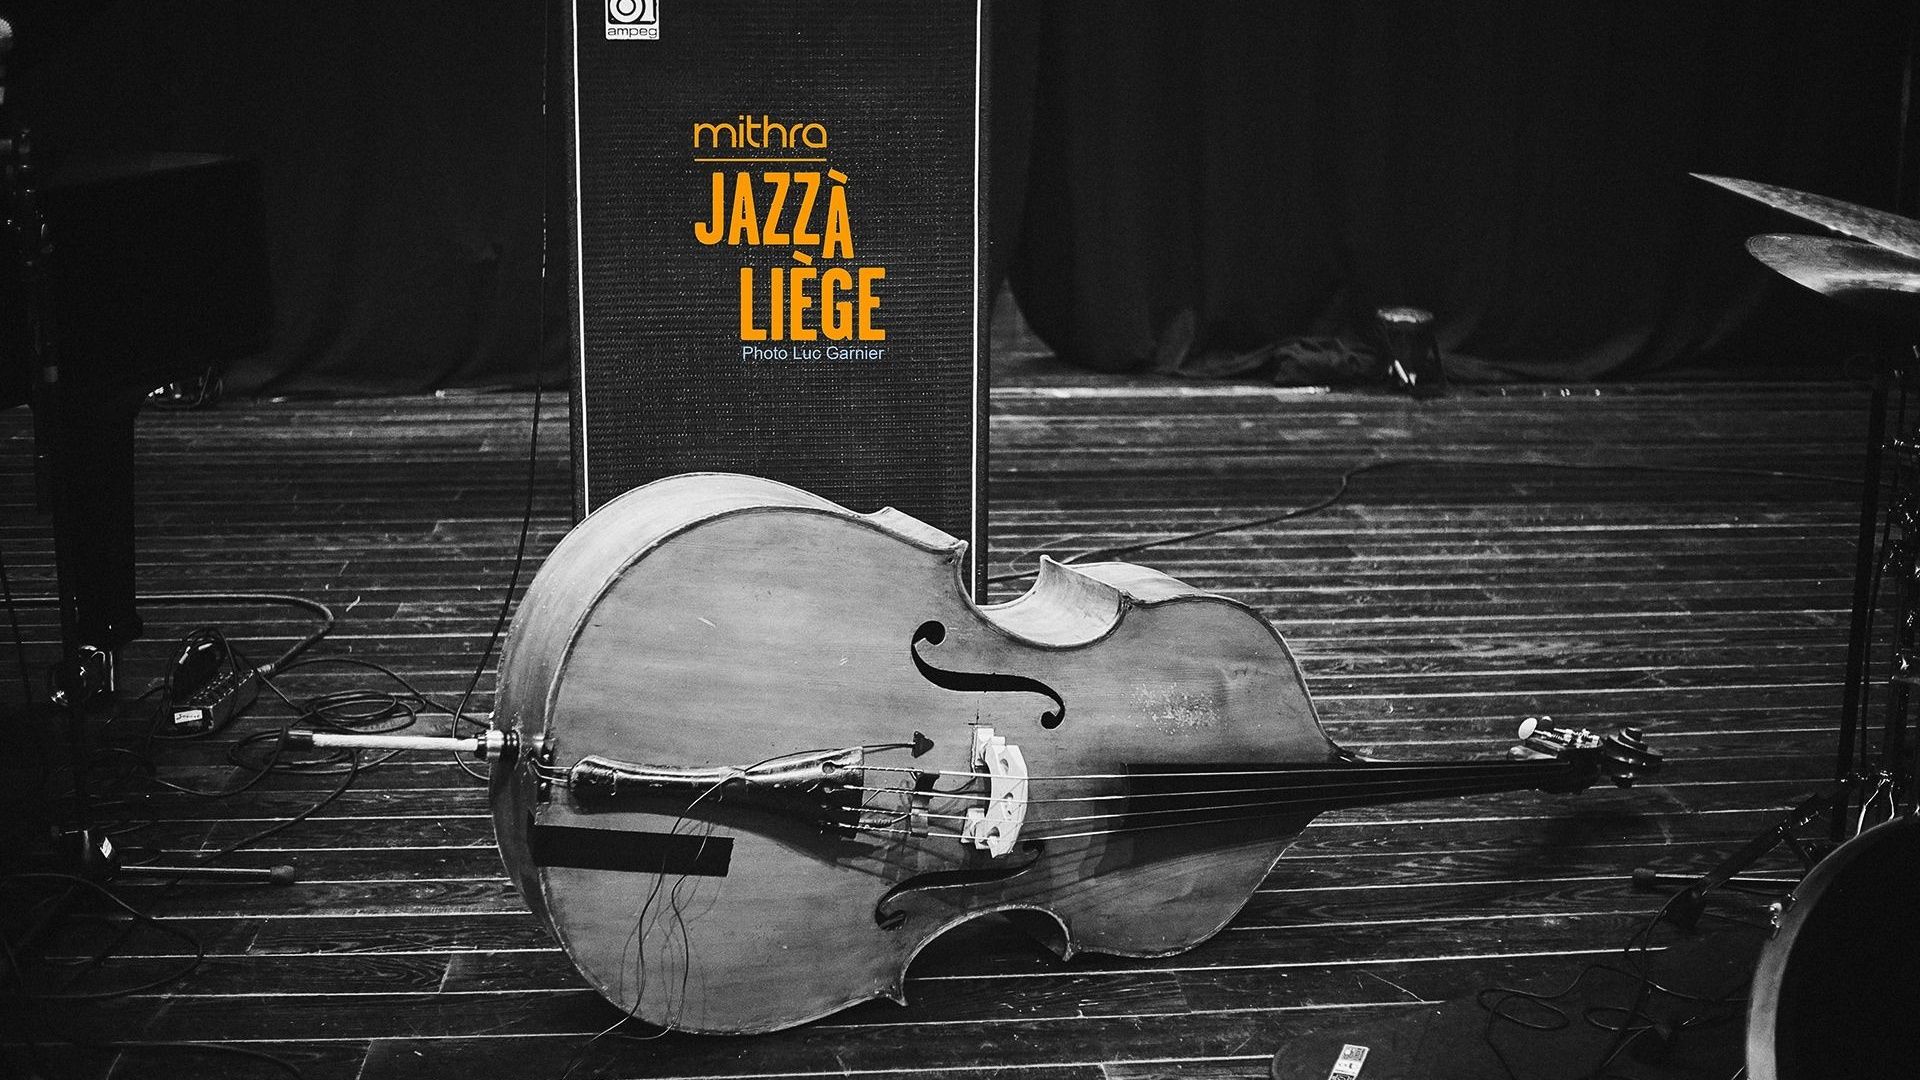 Mithra Jazz à Liège, du 23 au 26 septembre 2021.